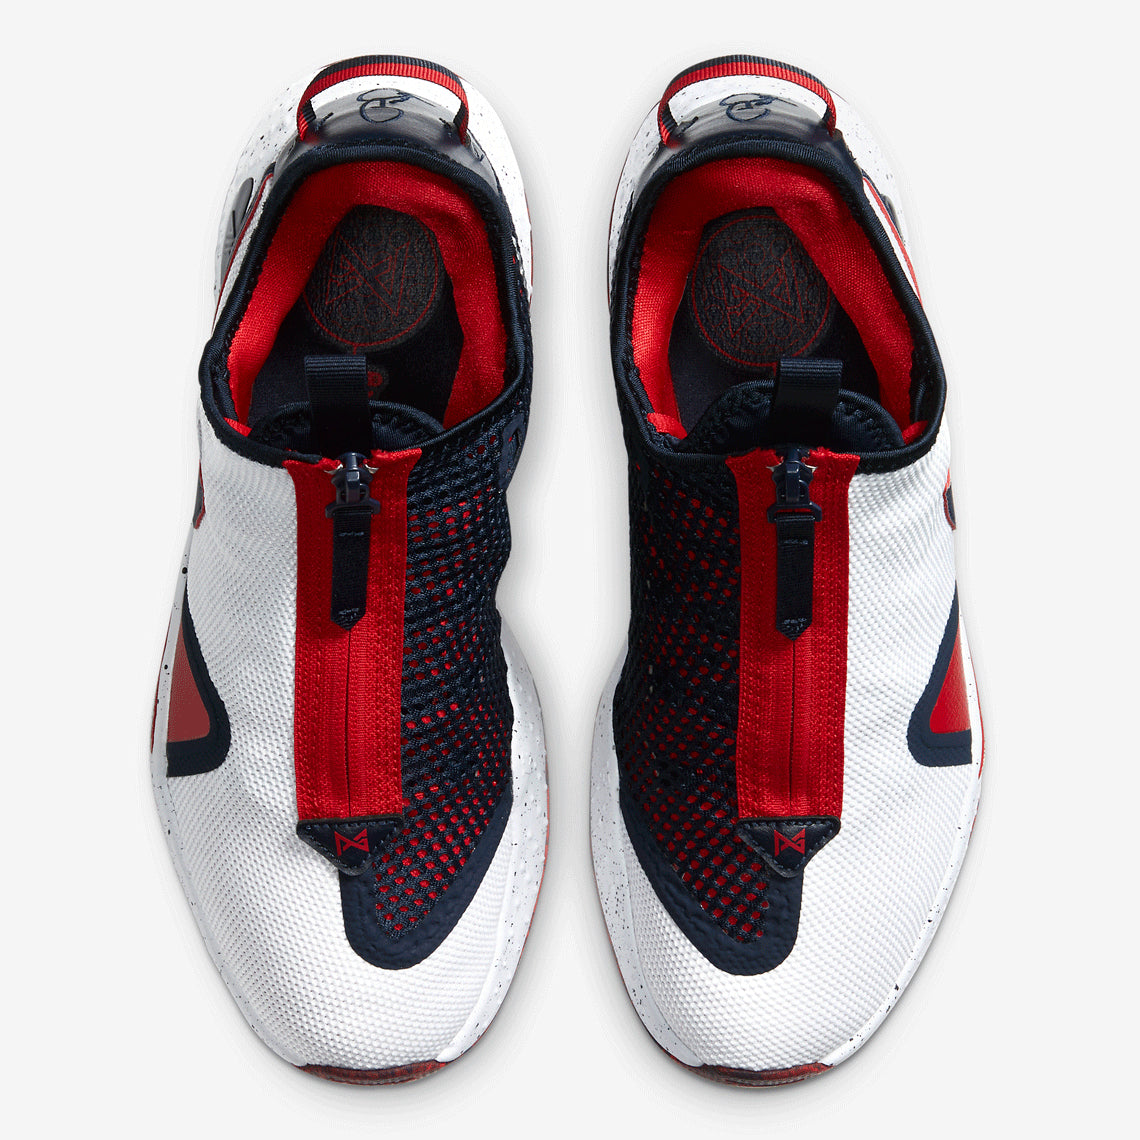 Nike PG 4 Basketball Shoe